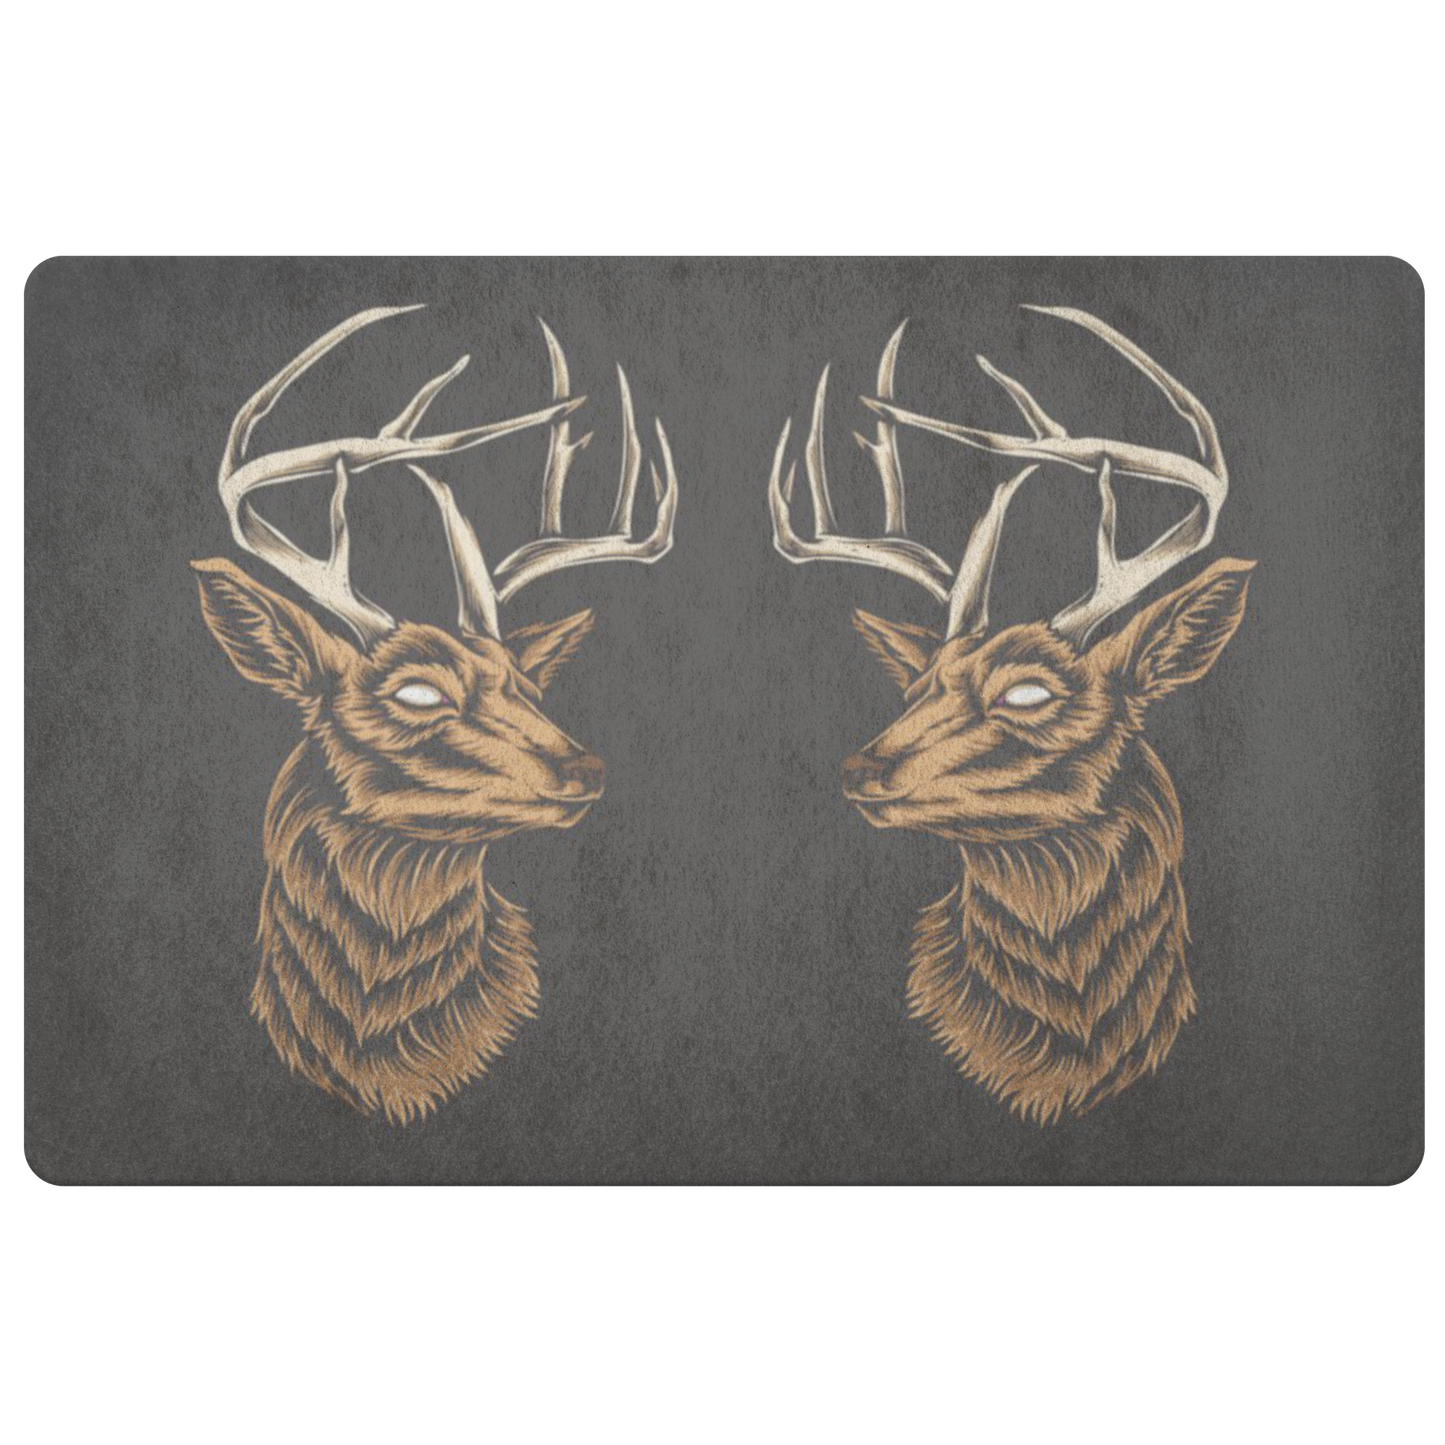 Deer Head Doormat, Animal Antlers Cabin Buck Floor Rug Front Door House Warming Gift Welcome Mat Decor Starcove Fashion